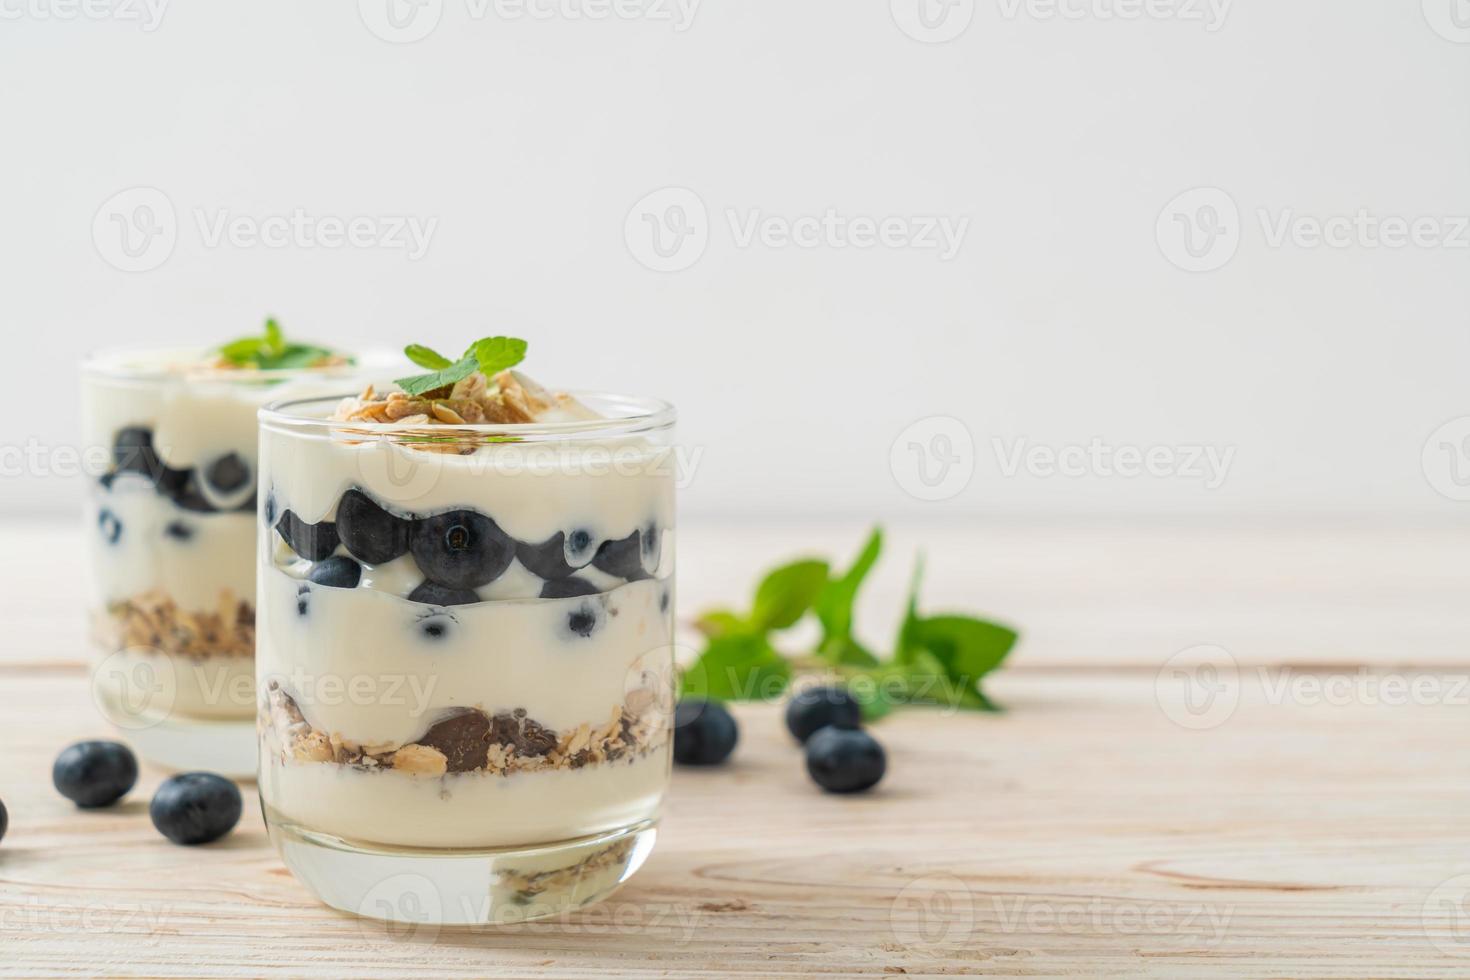 mirtilos frescos e iogurte com granola - estilo de comida saudável foto